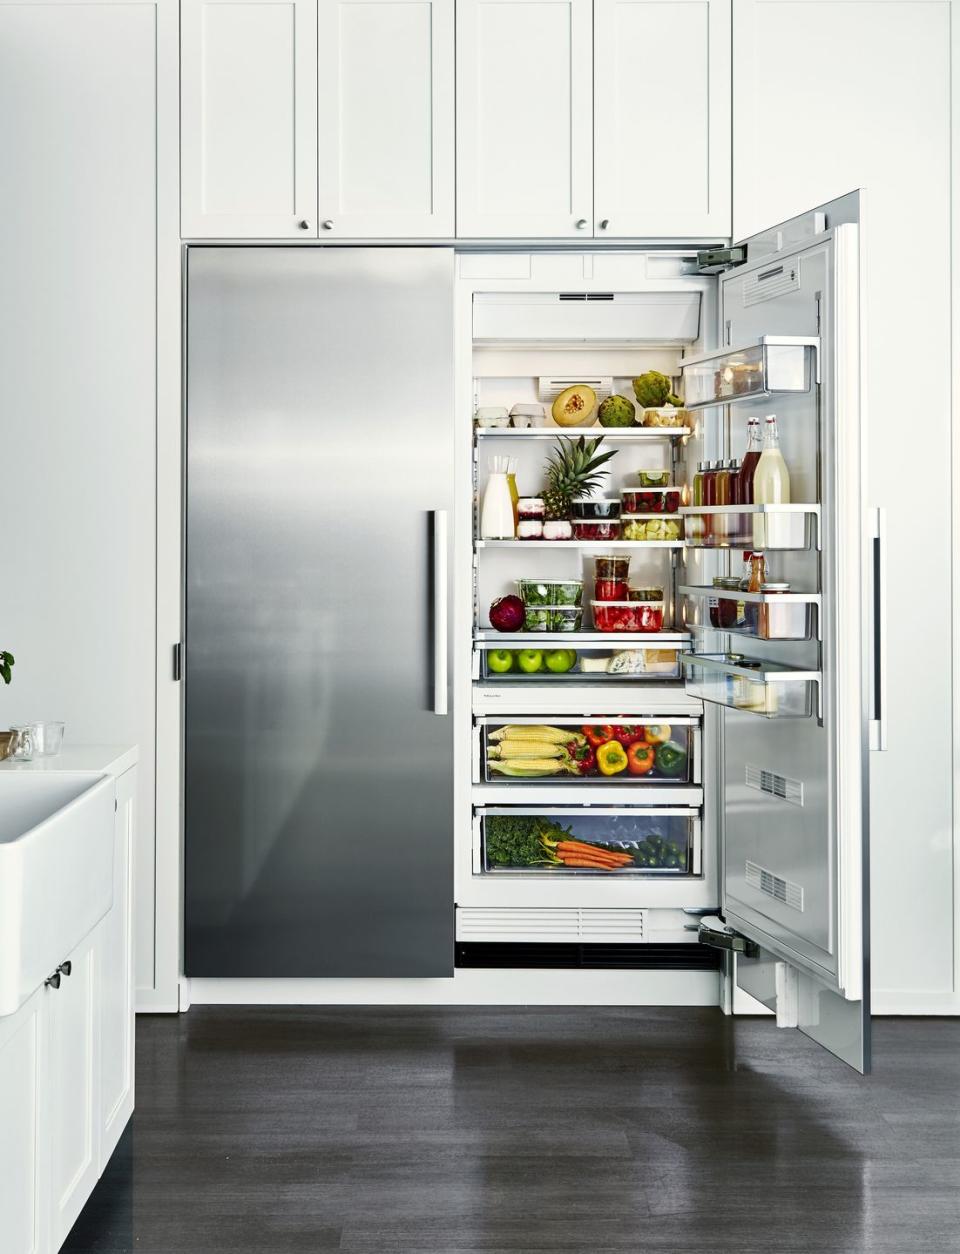 15) Deep-clean the fridge